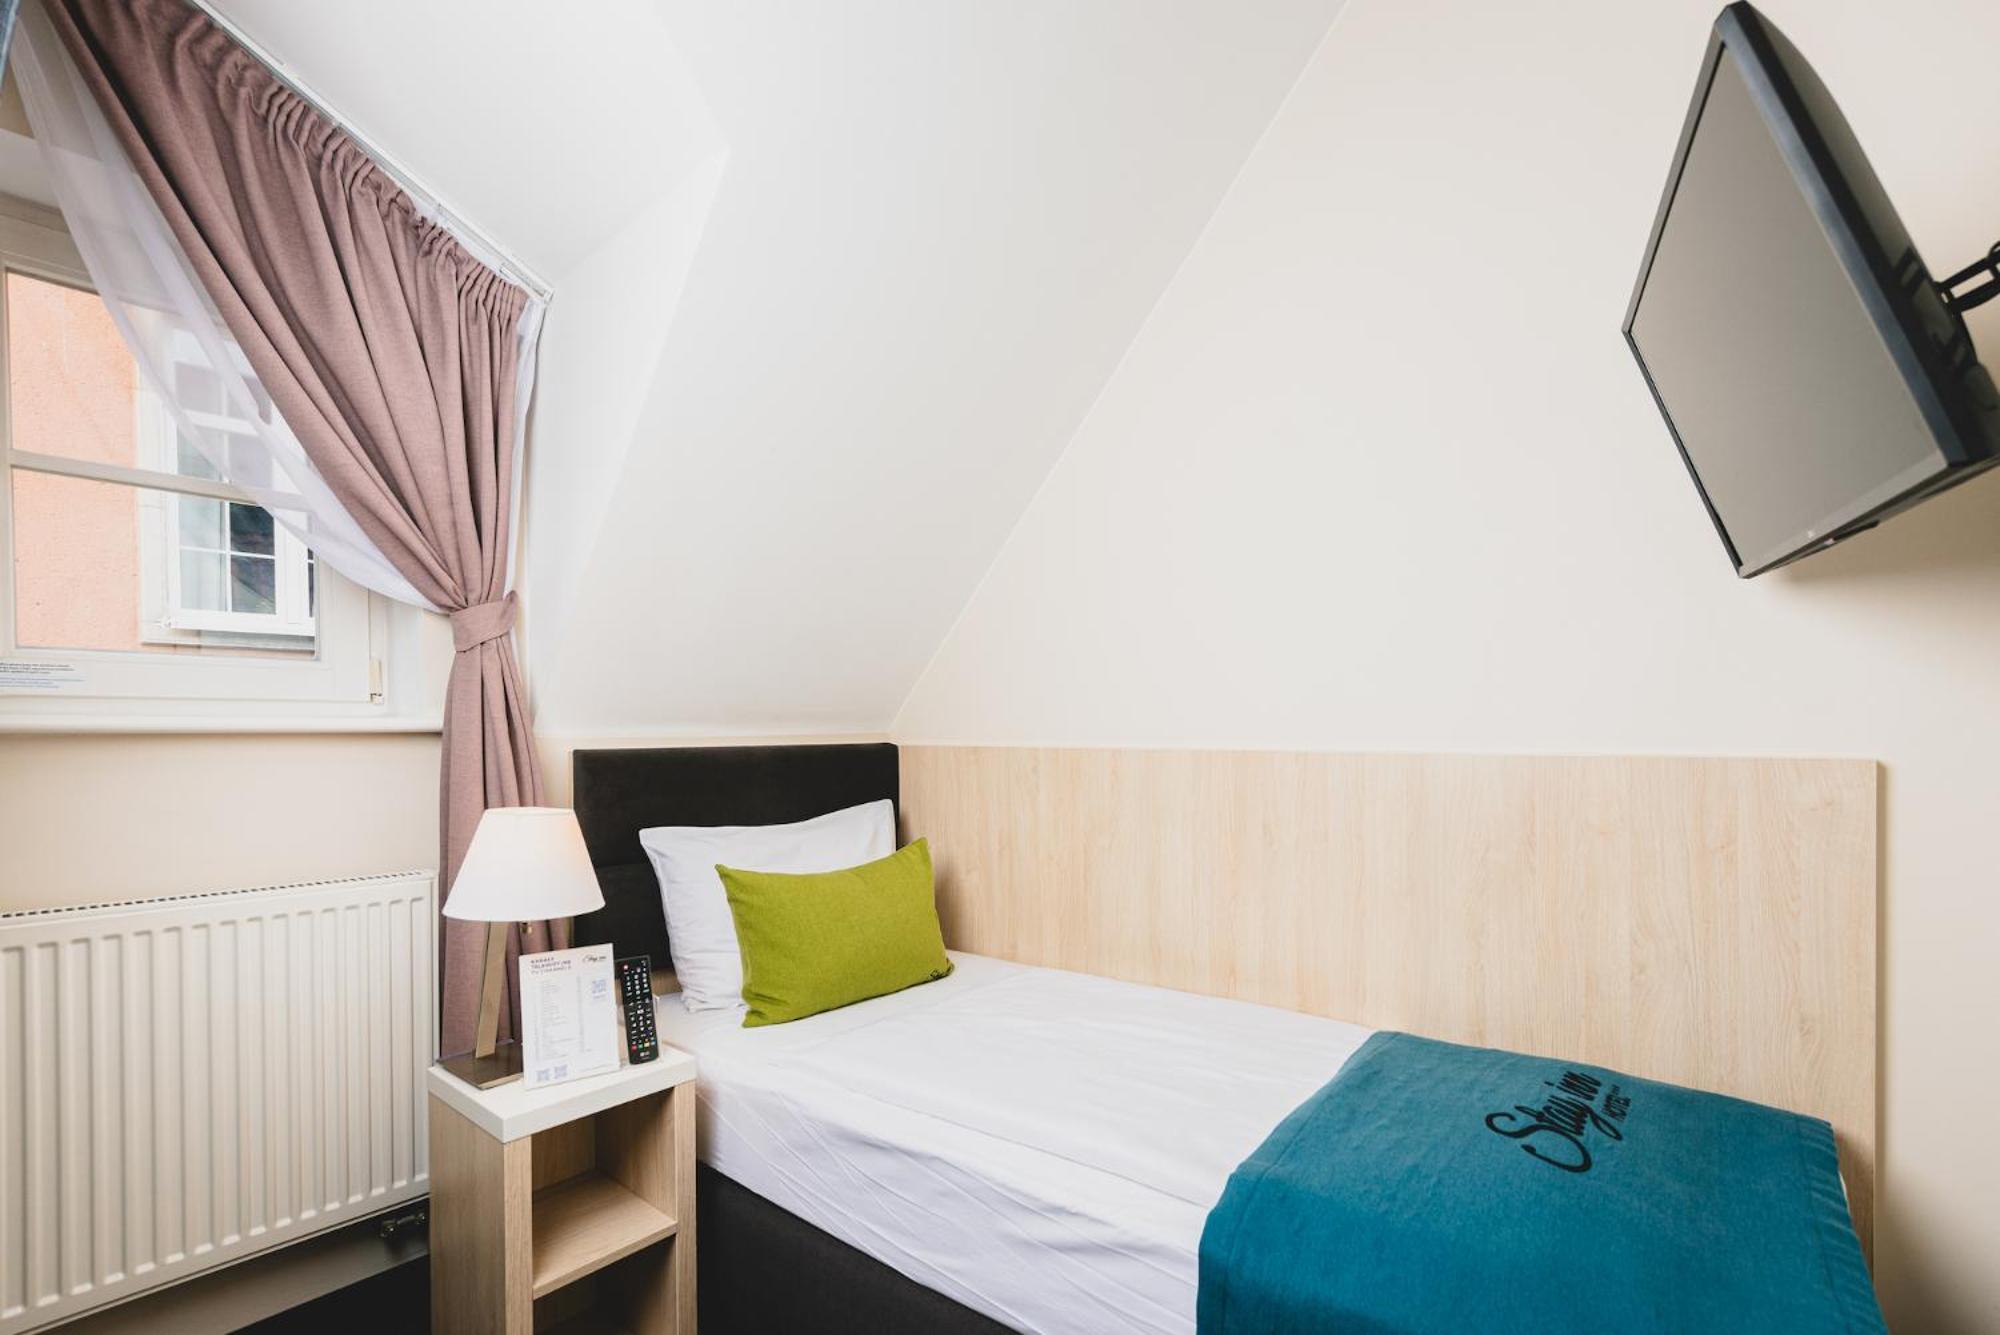 Stay Inn Hotel Gdańsk Zewnętrze zdjęcie